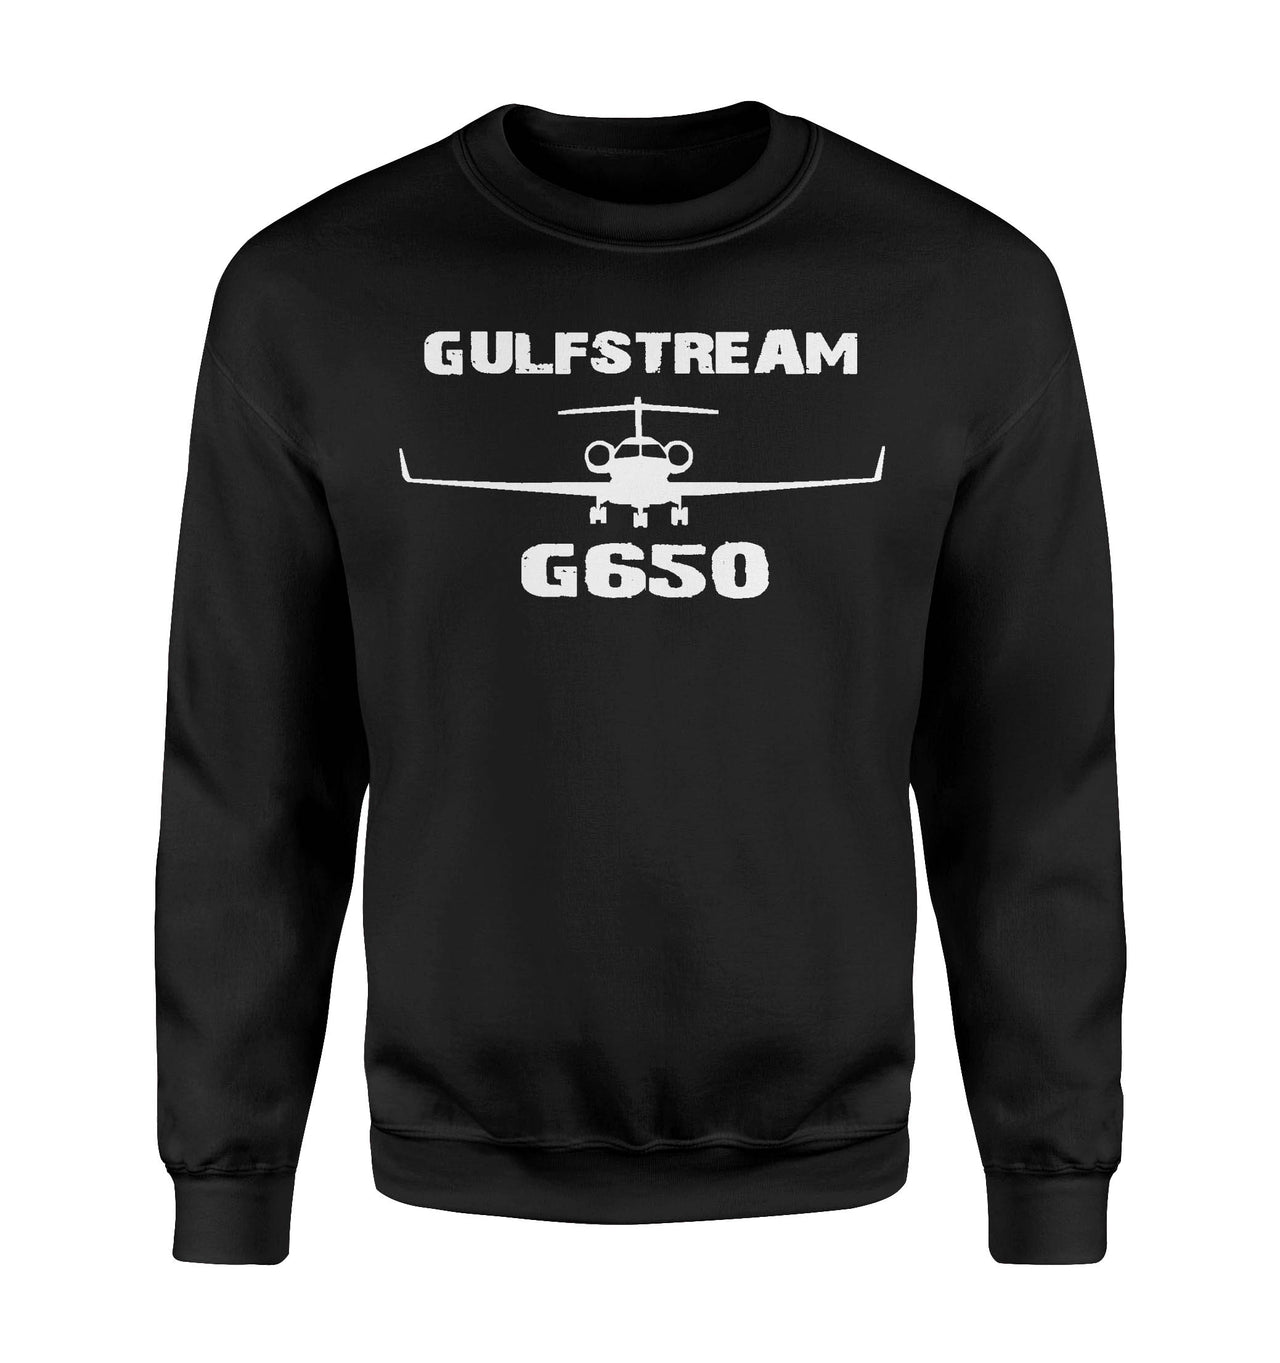 Gulfstream G650 & Plane Designed Sweatshirts